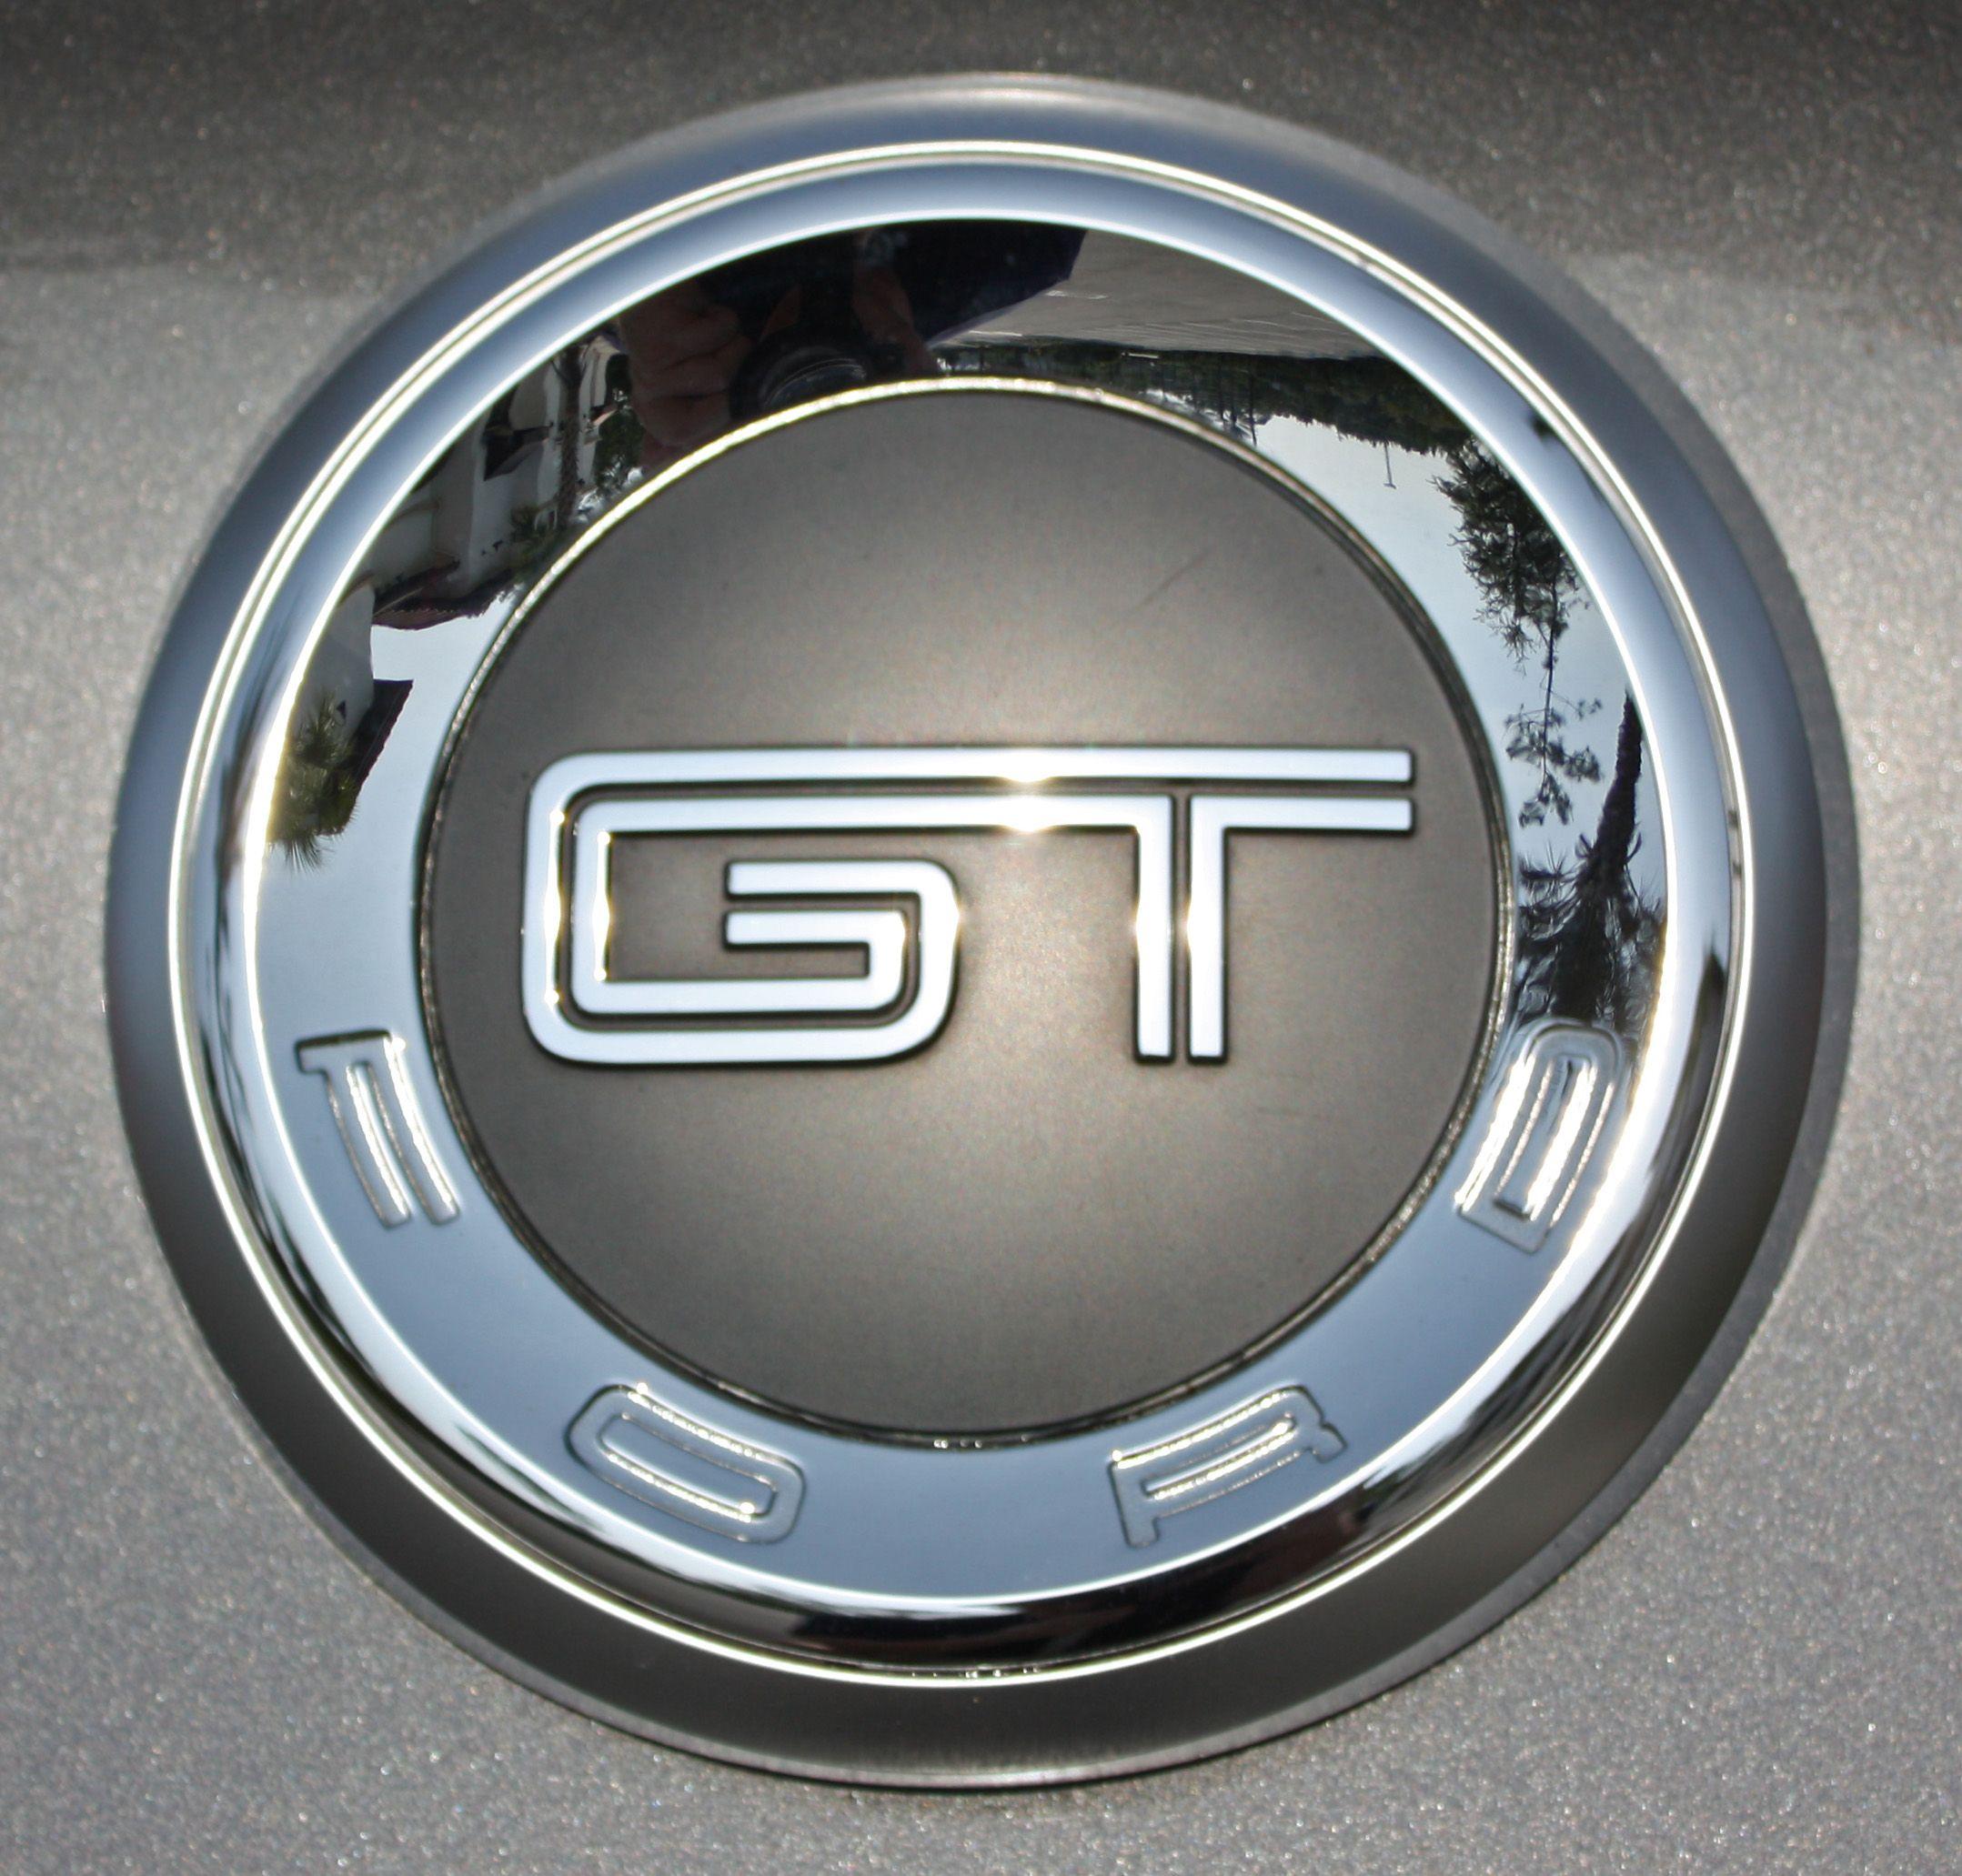 Ford Mustang 5.0 Logo - Mustang gt Logos